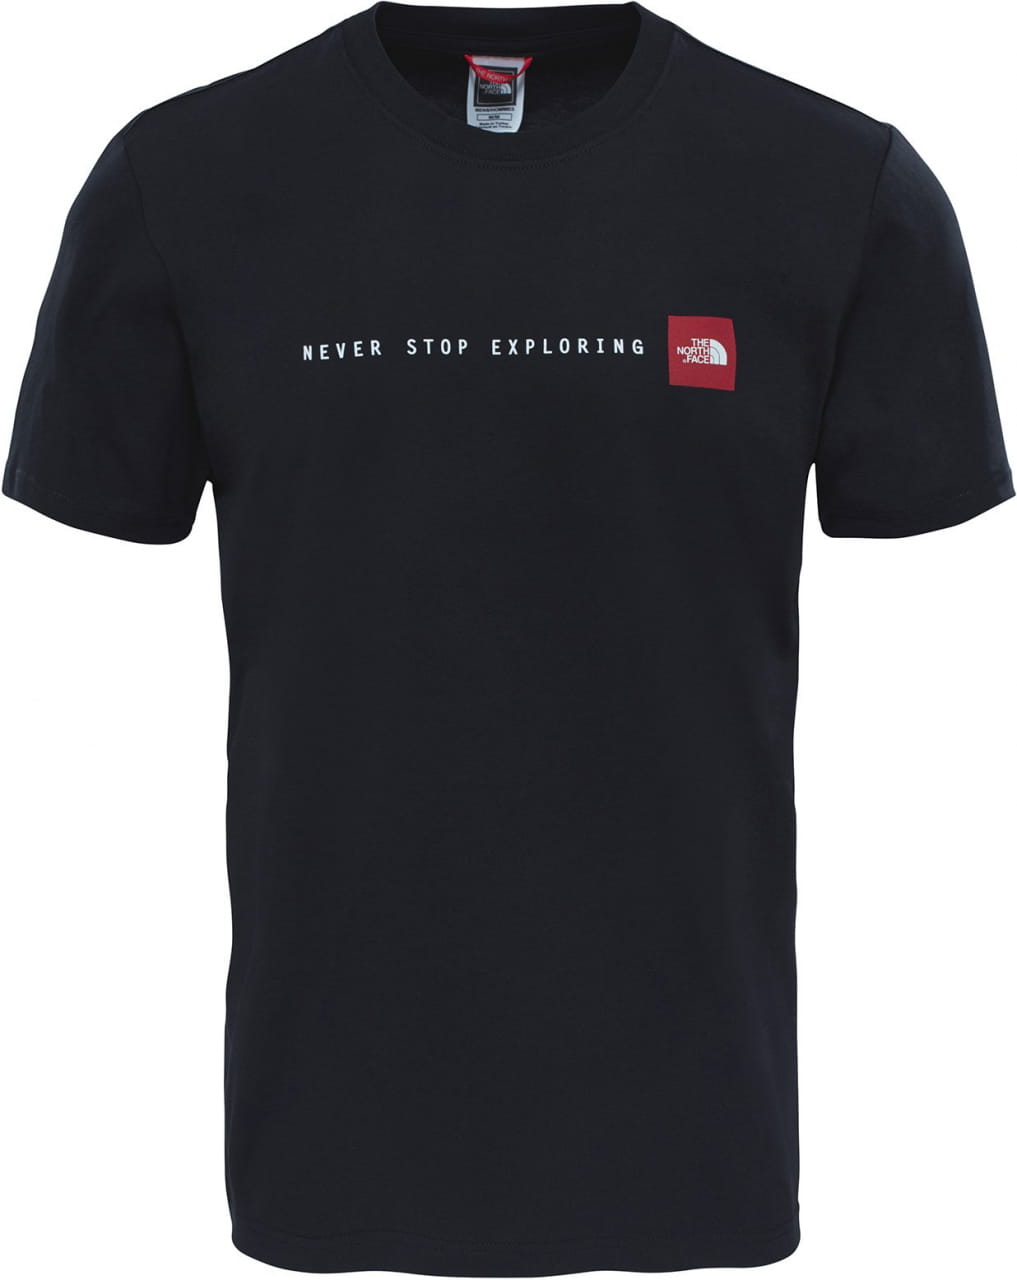 Koszulka męska The North Face Men's Nse T-Shirt